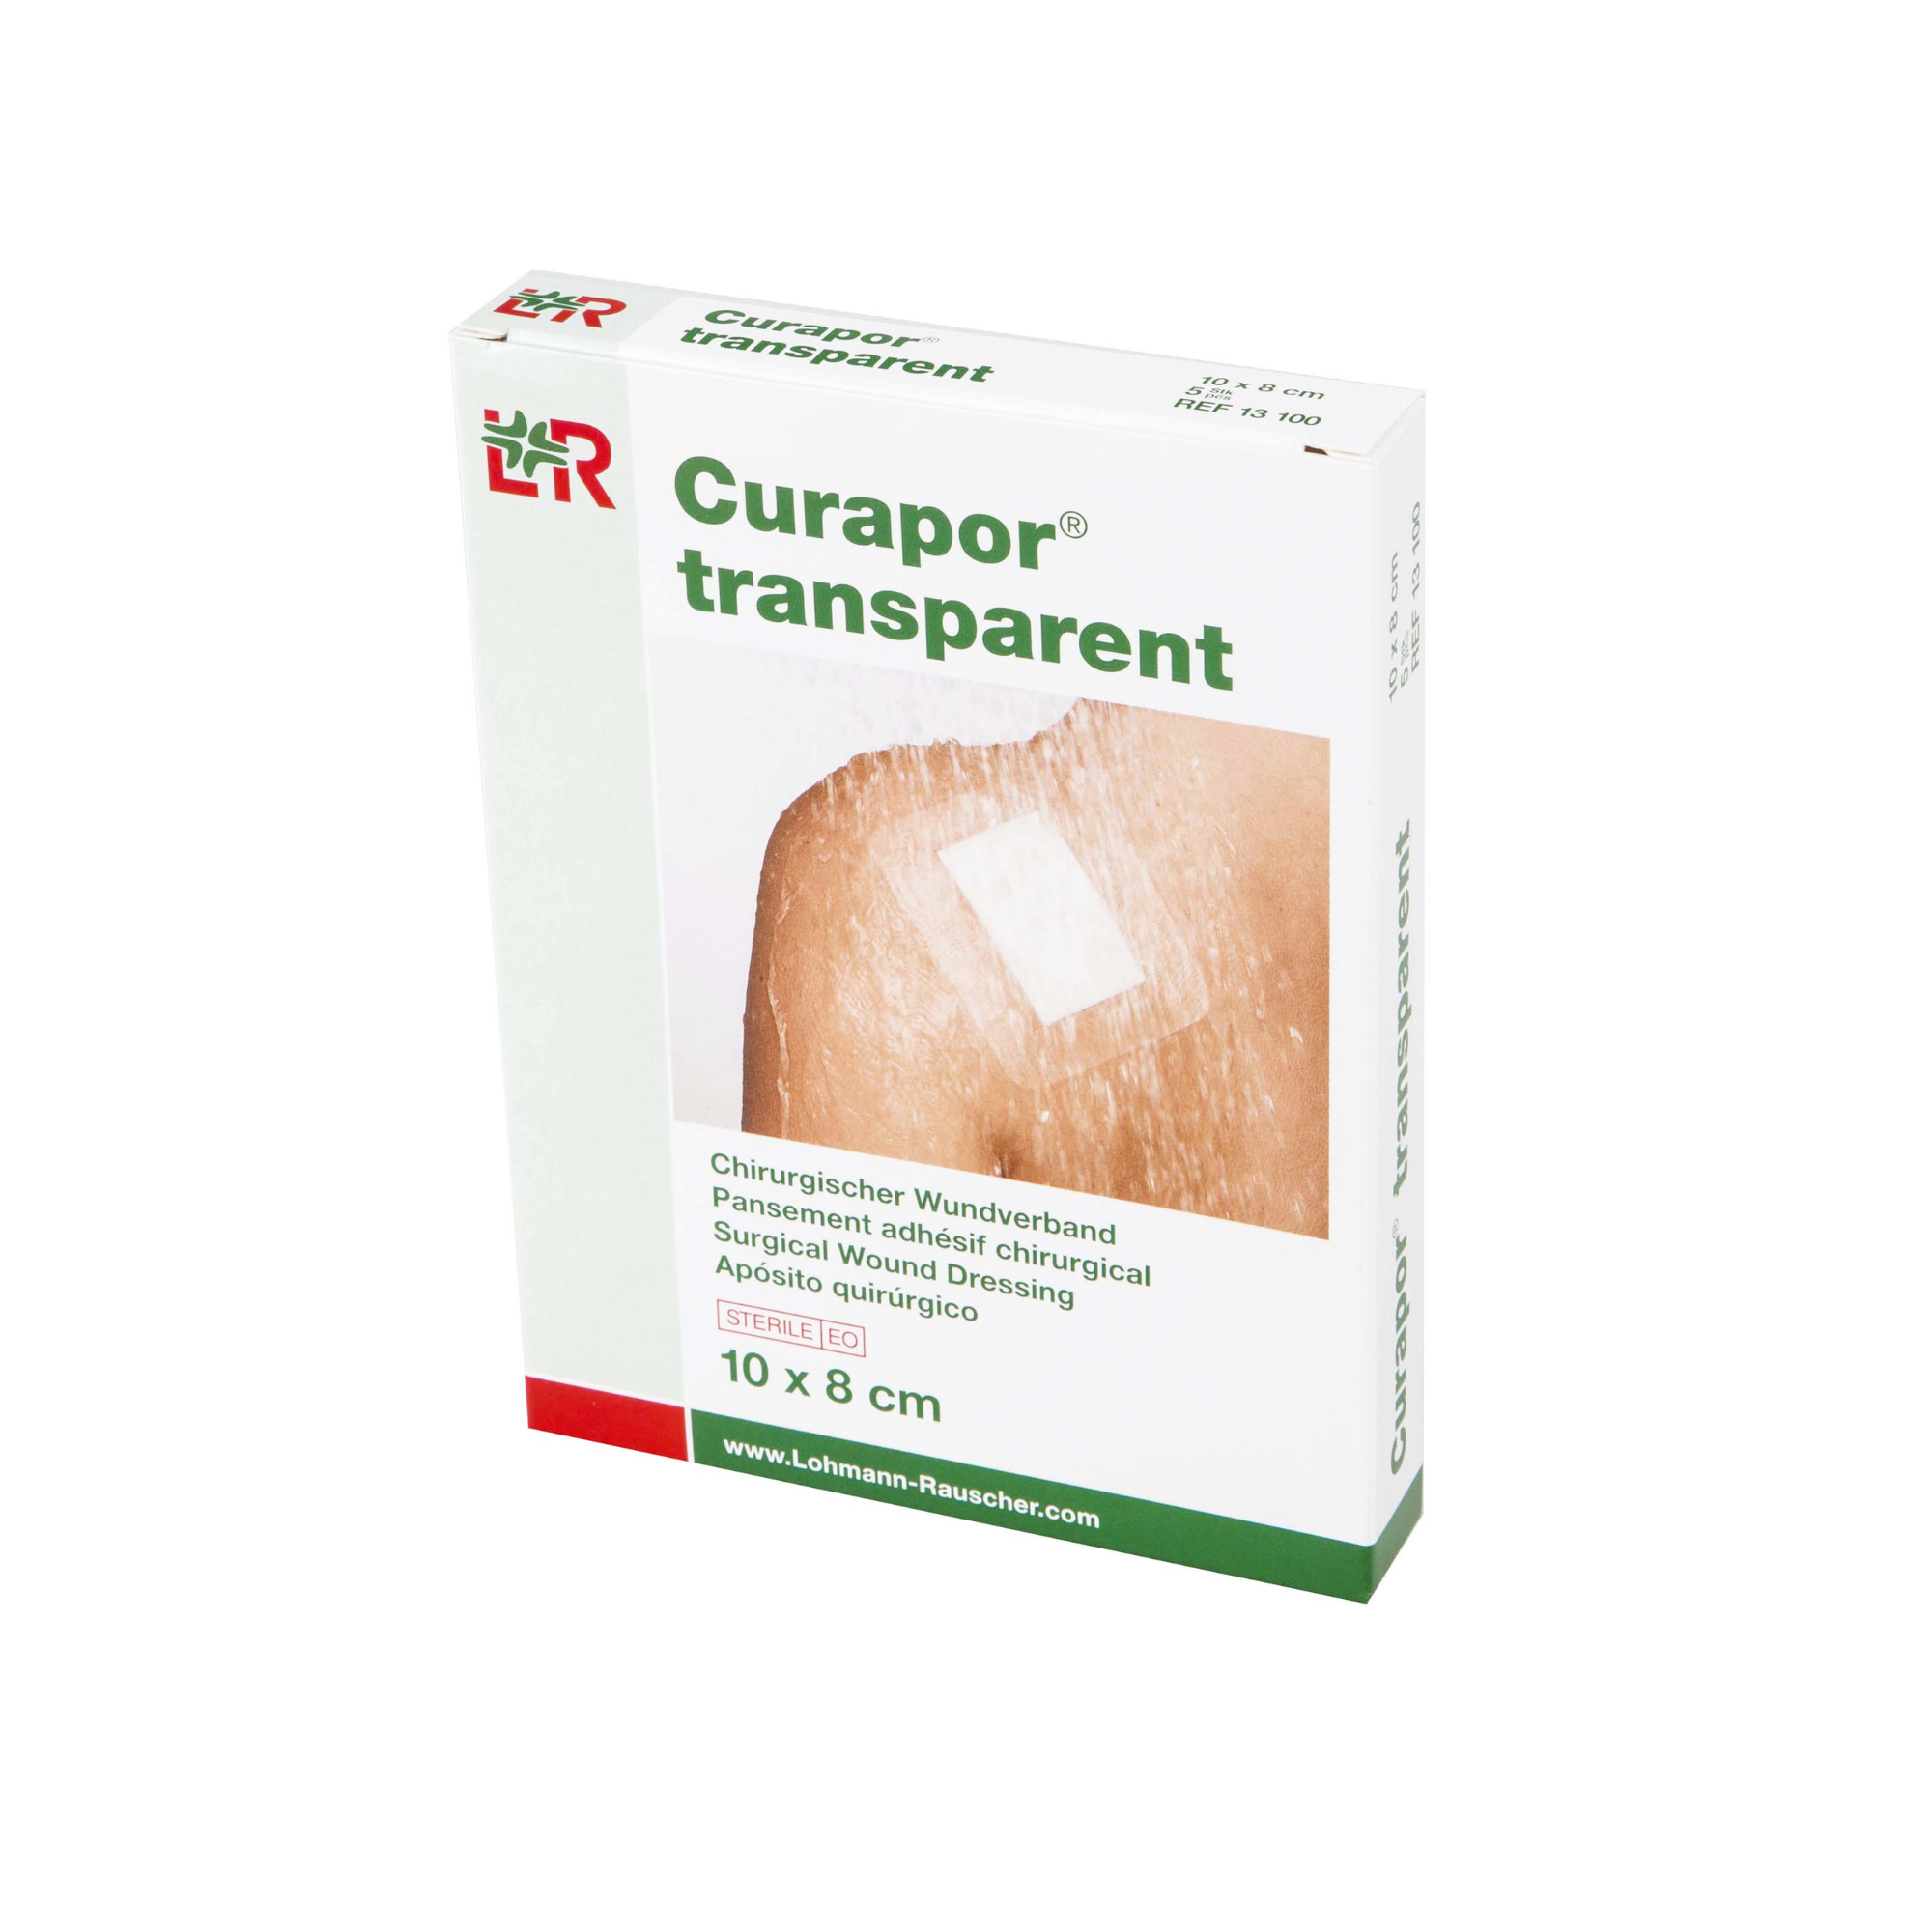 Pansements curapor stérile post opératoire  transparent - 5 dimensions  - Lohman Rauscher